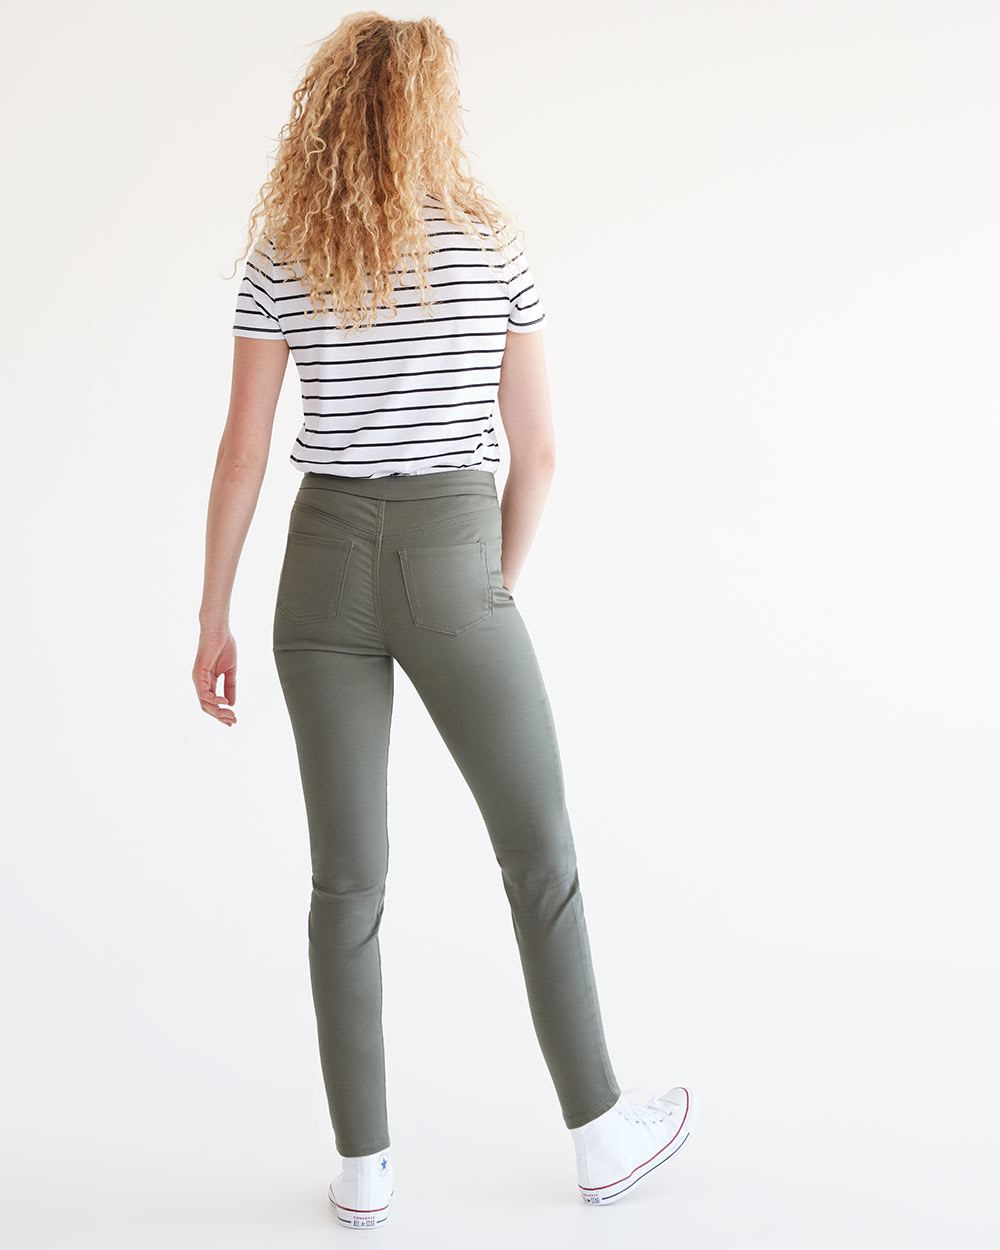 Denim Legging Pants - R Essentials - Tall, Tall